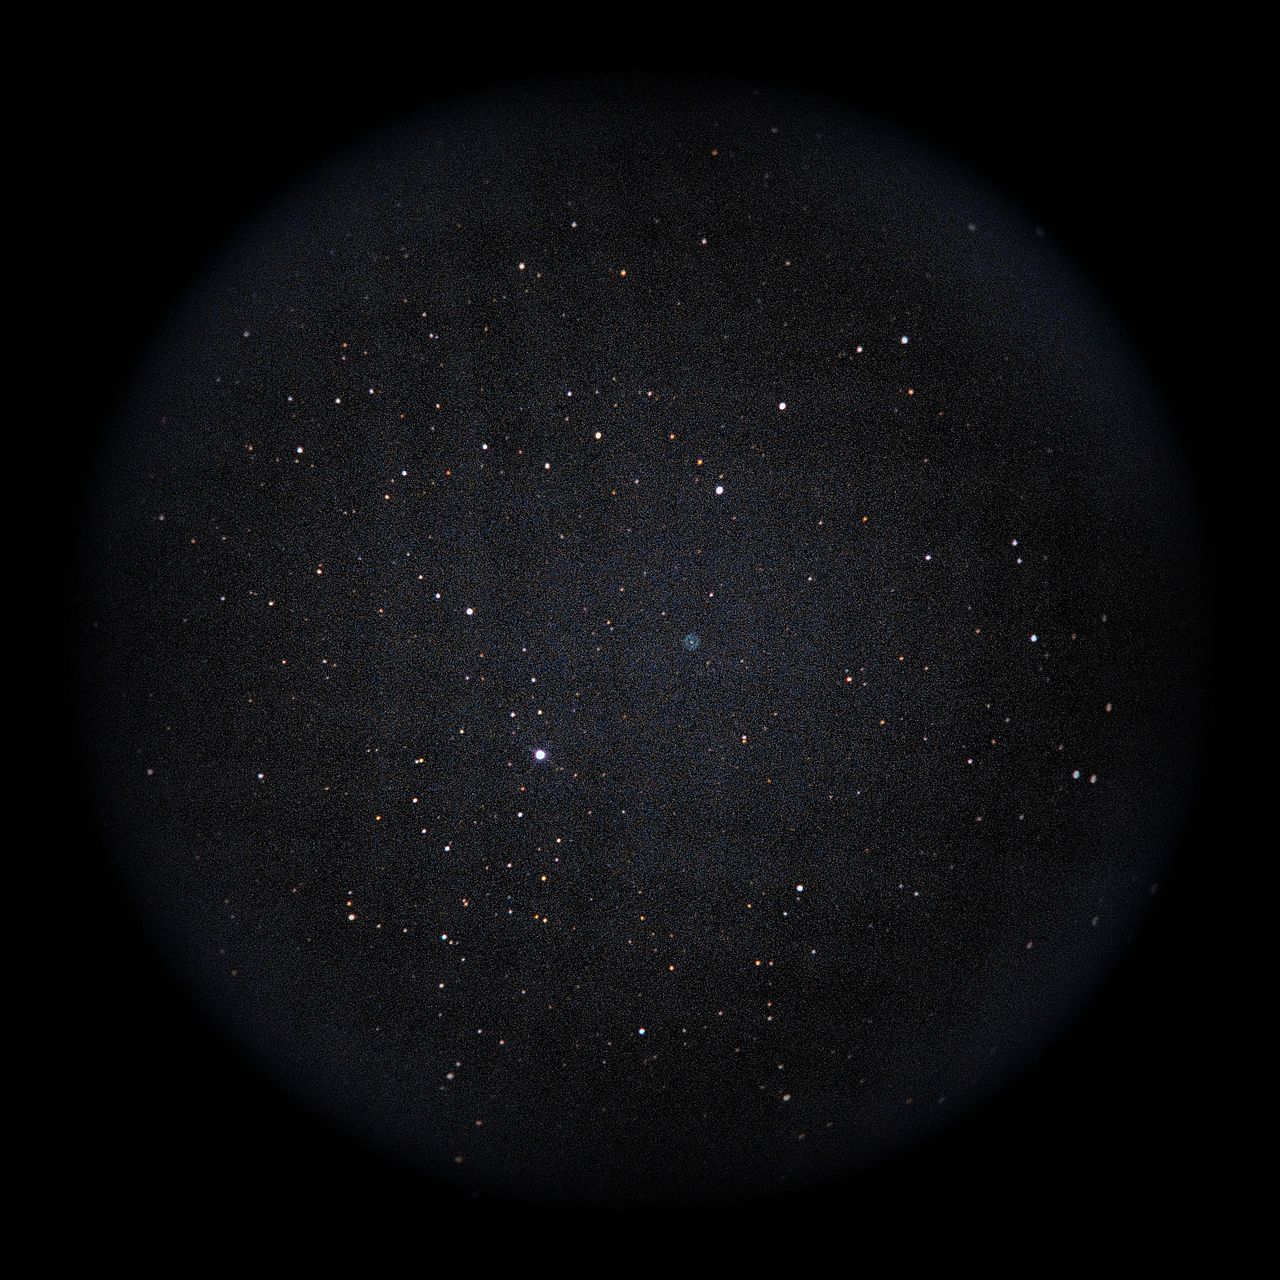 Image of NGC1501